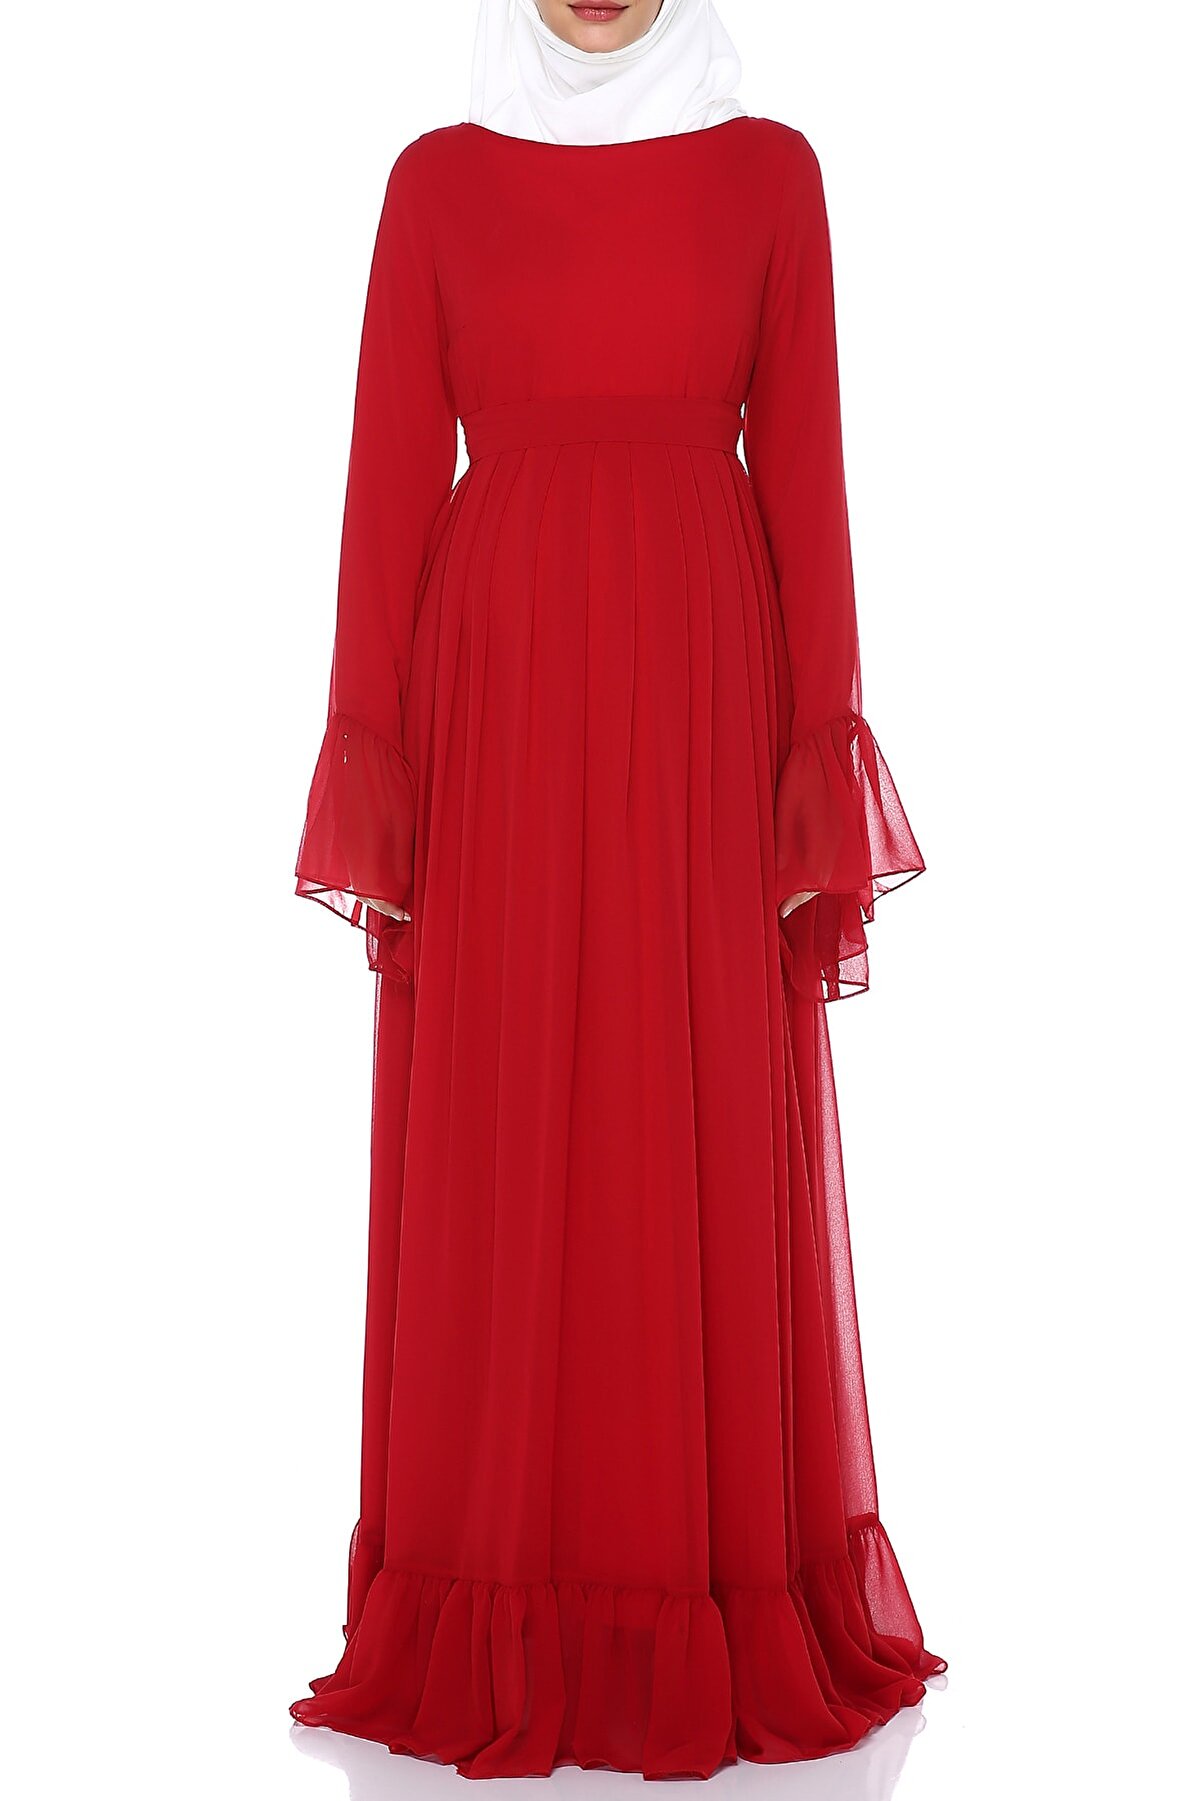 Moda Labio Kırmızı Minel Şifon Tesettür Hamile Elbisesi